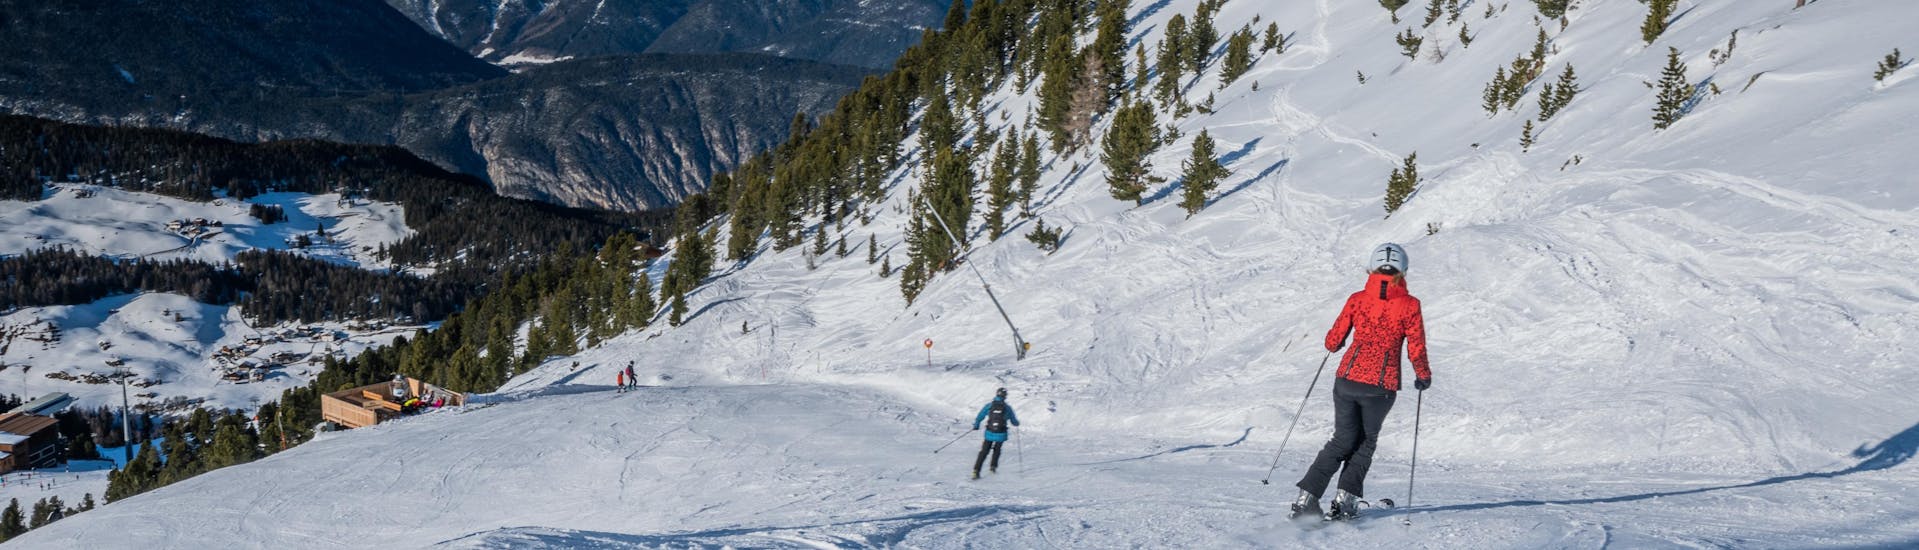 Vue sur un paysage de montagne ensoleillé lors d'un cours de ski avec l'une des écoles de ski de la station de ski Oetz-Hochoetz.